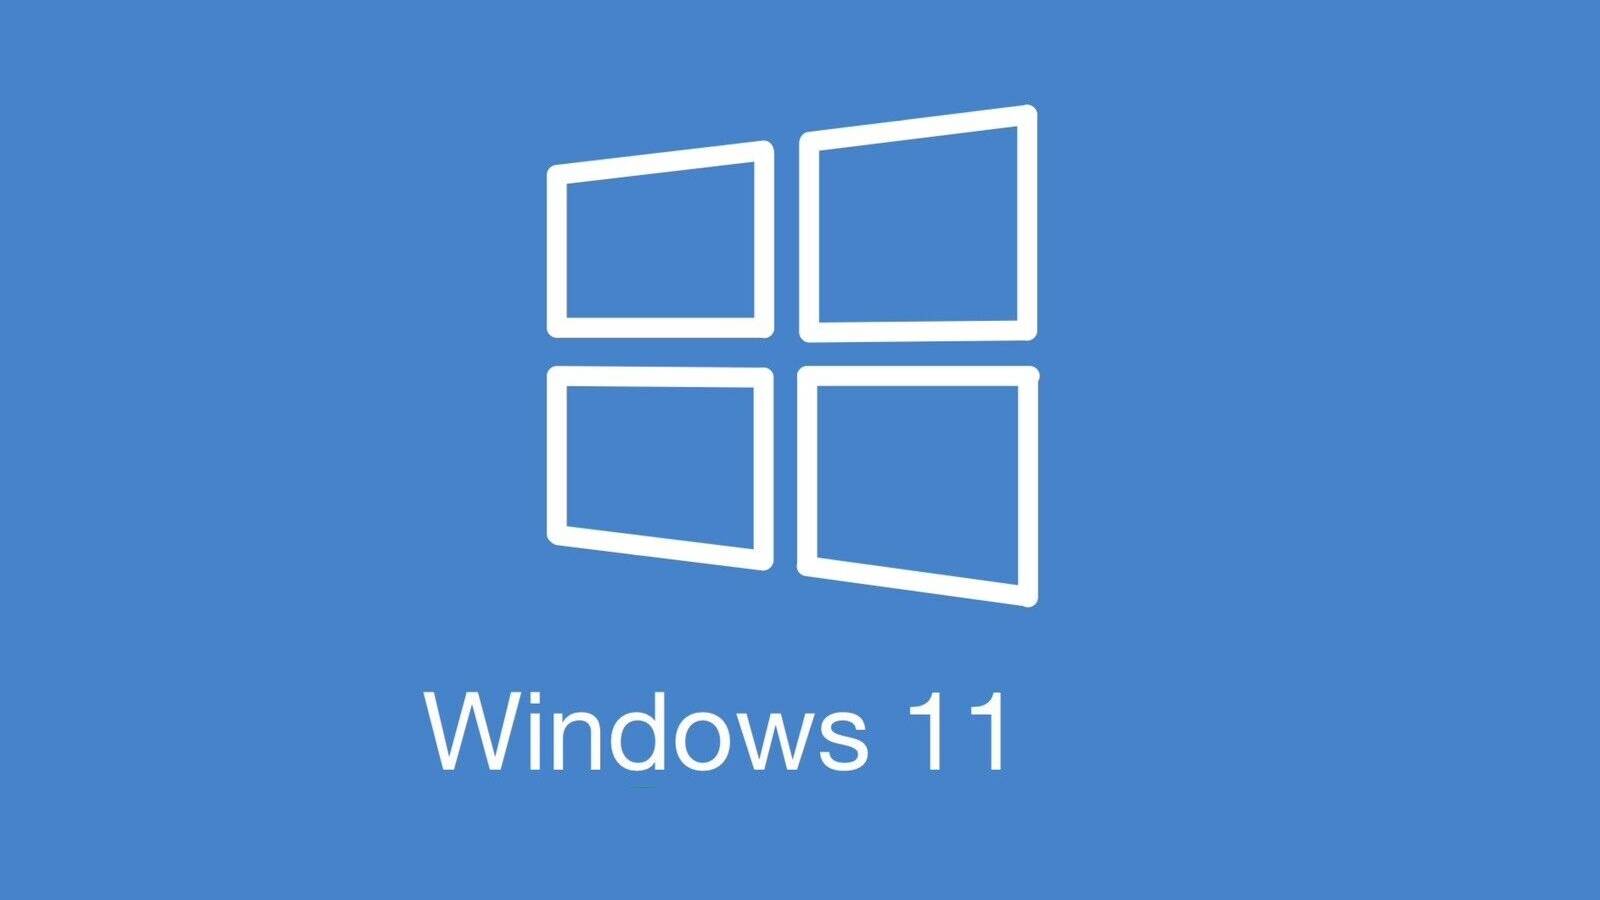 Windows 11 PROBLEMELE Majore Microsoft Chinuie Repare